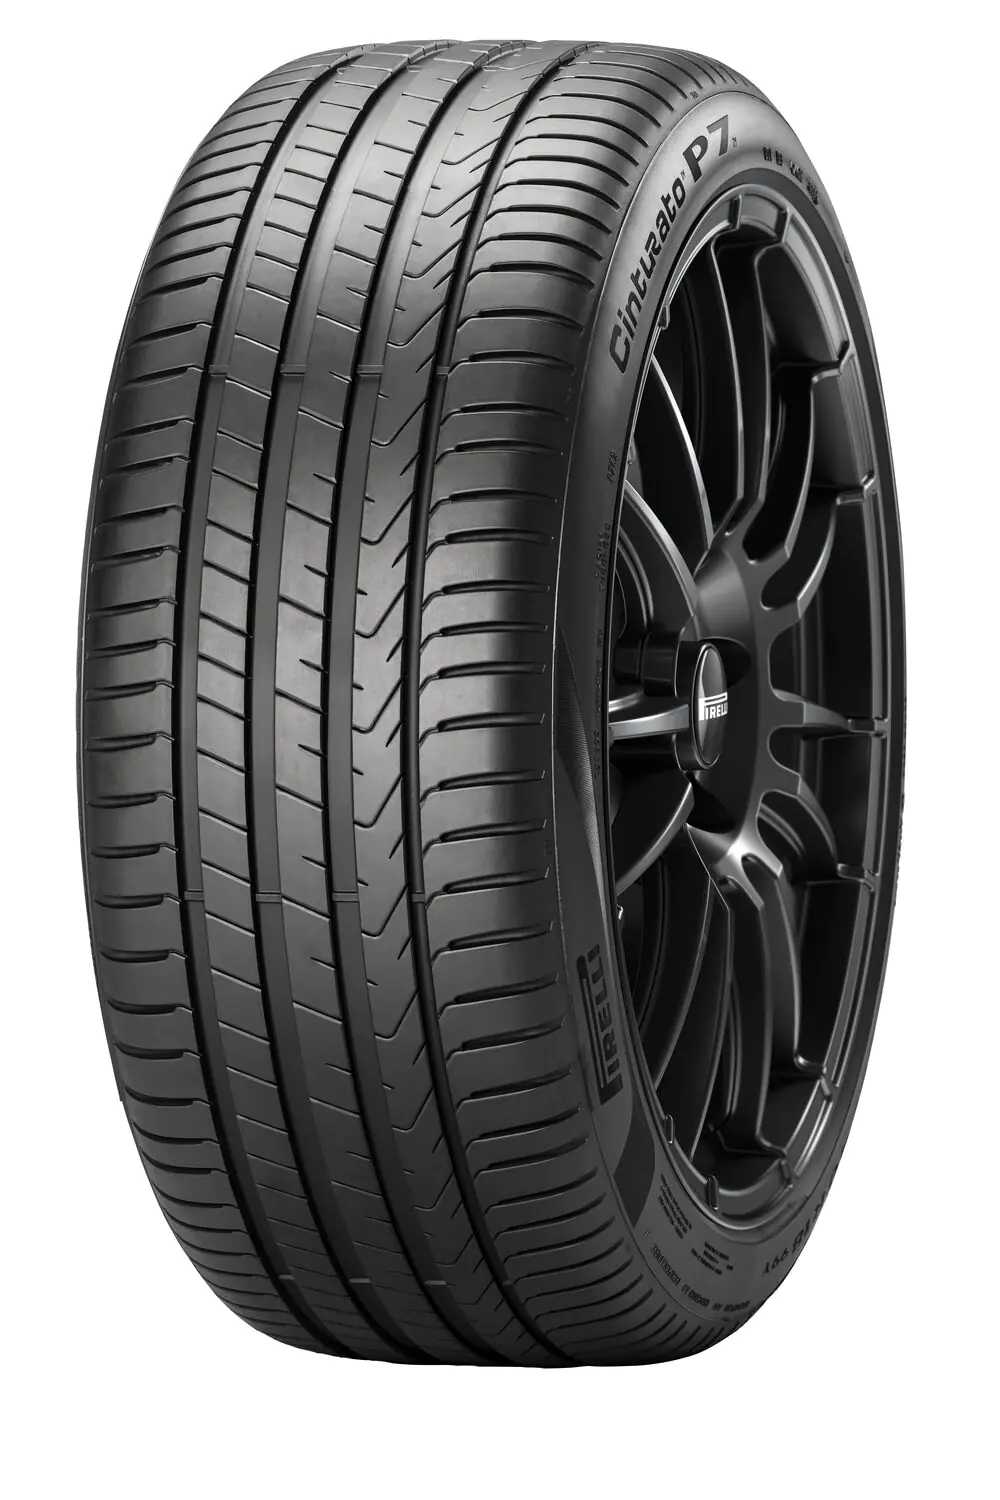 Pirelli Pirelli 225/55 R17 97W CINTURATO P7 (P7C2) pneumatici nuovi Estivo 